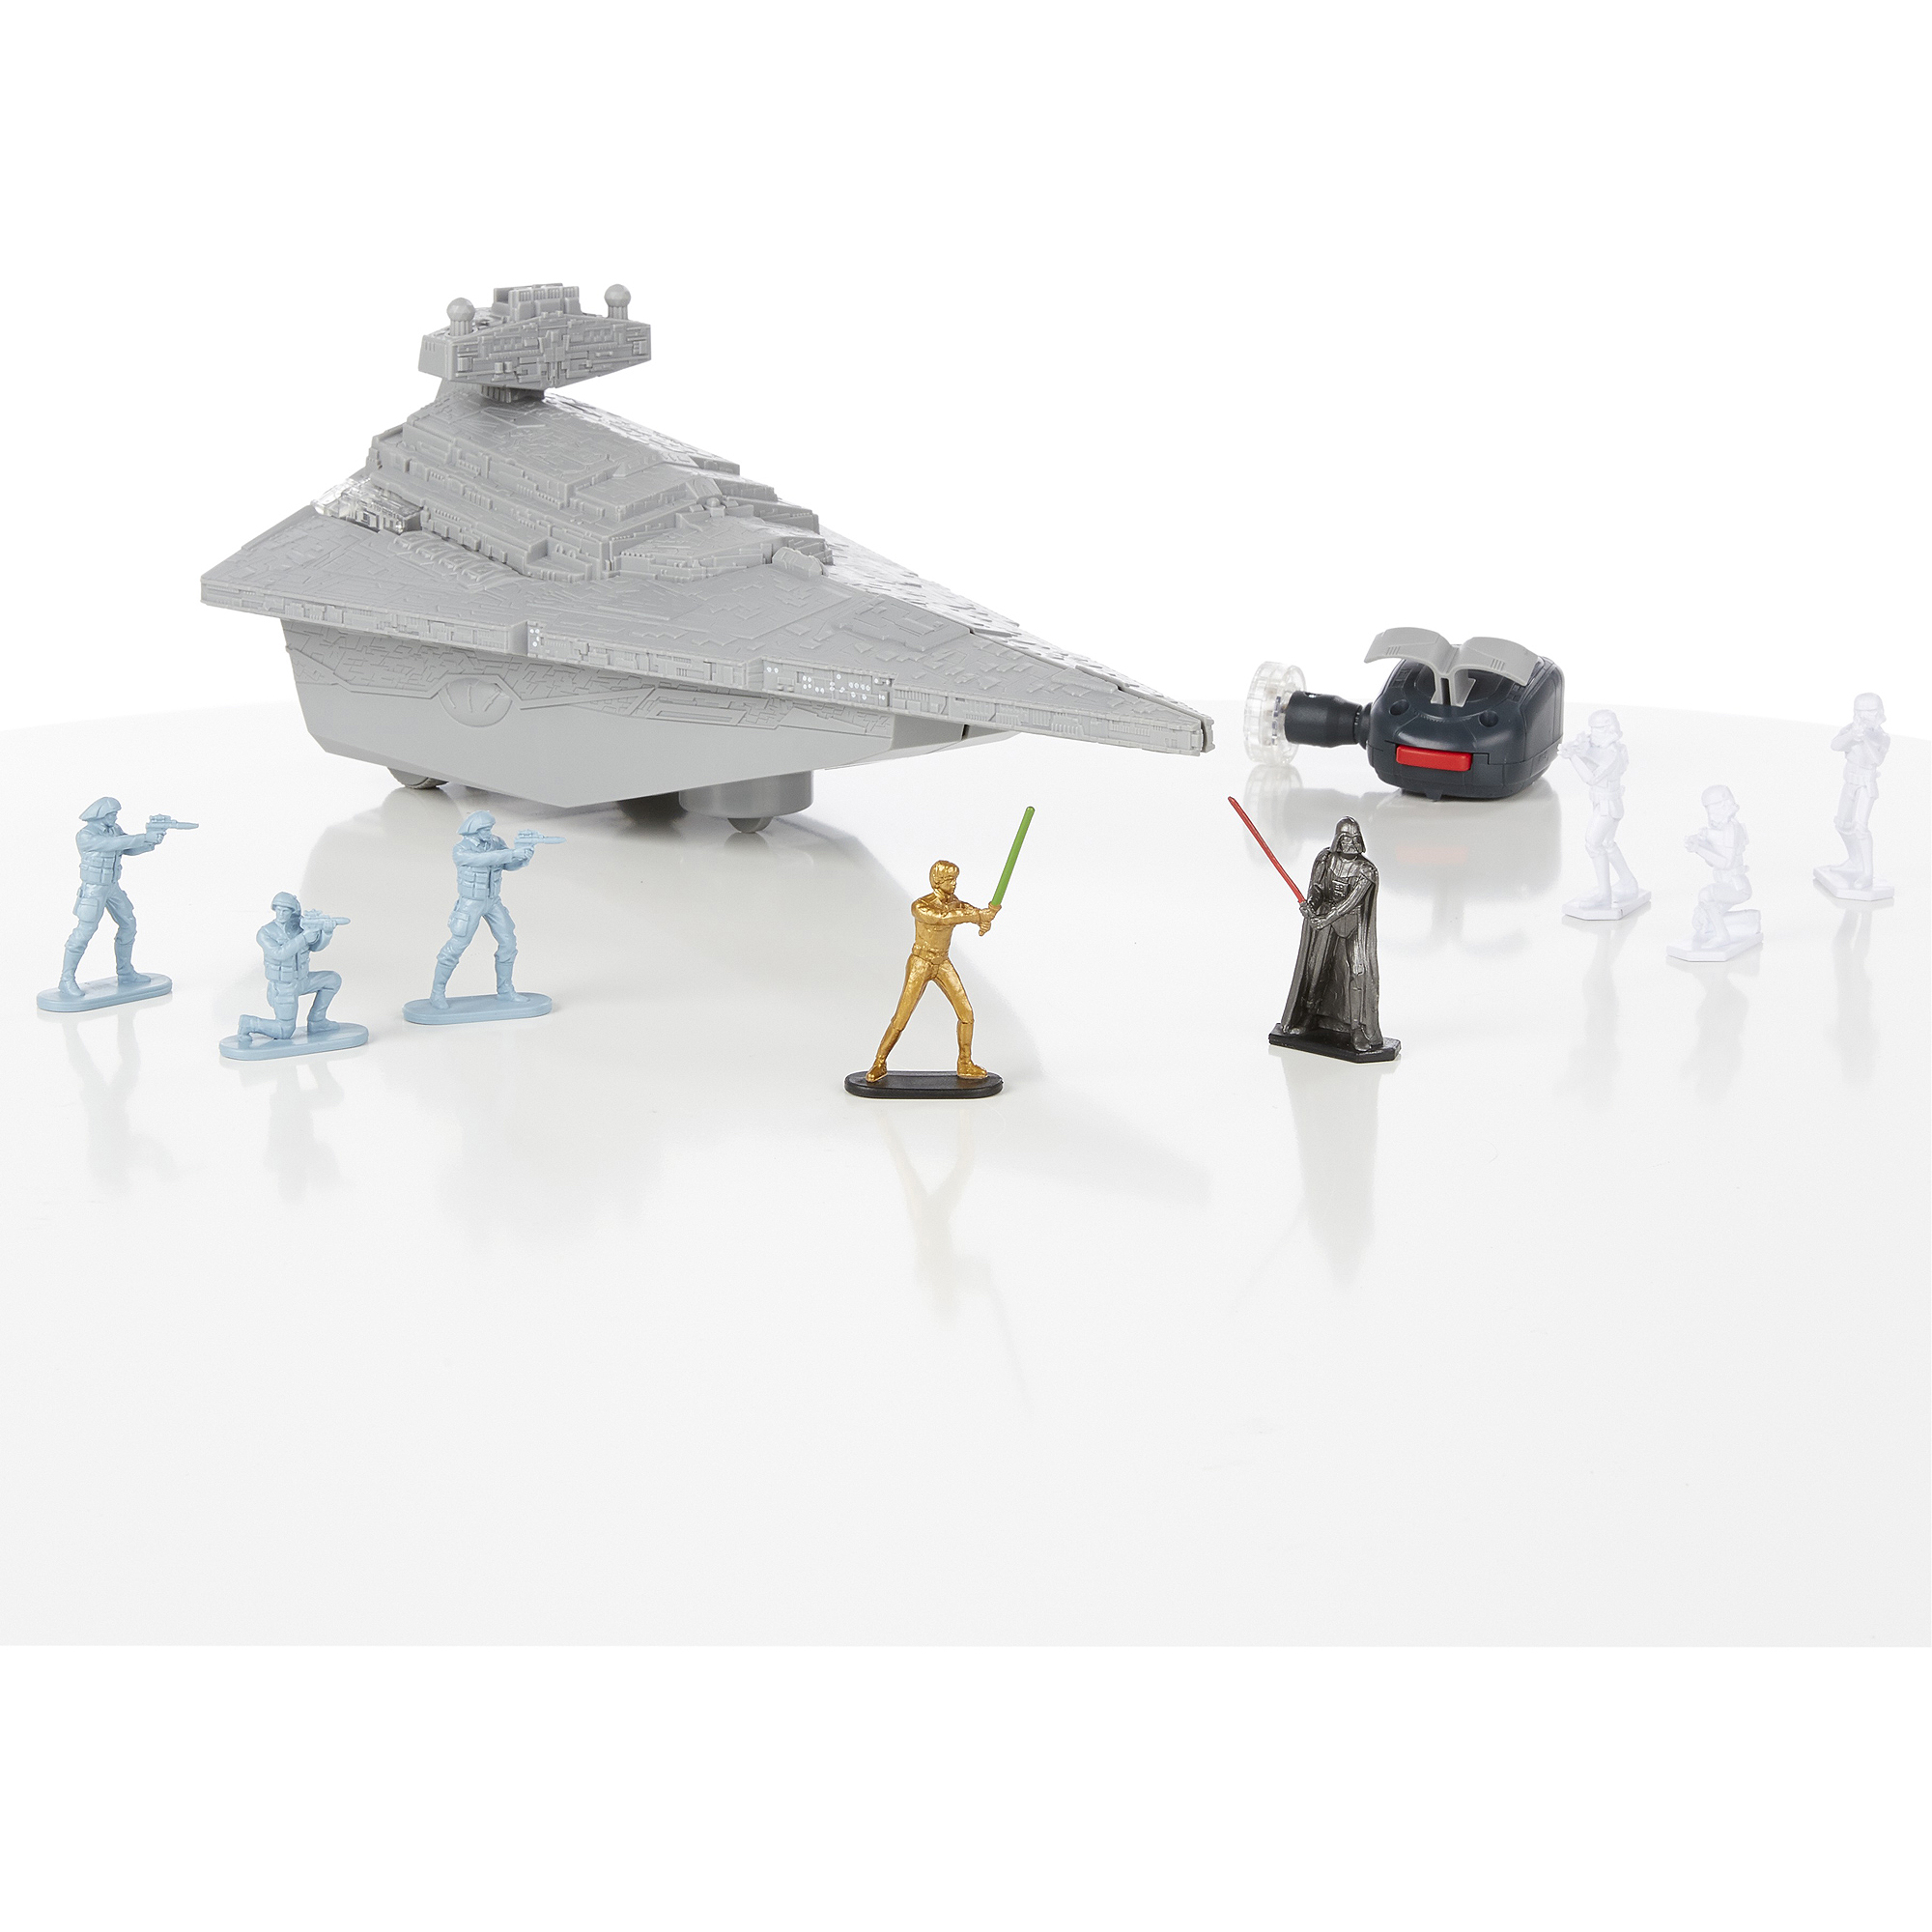 Star Wars Command Star Destroyer Set - image 4 of 10